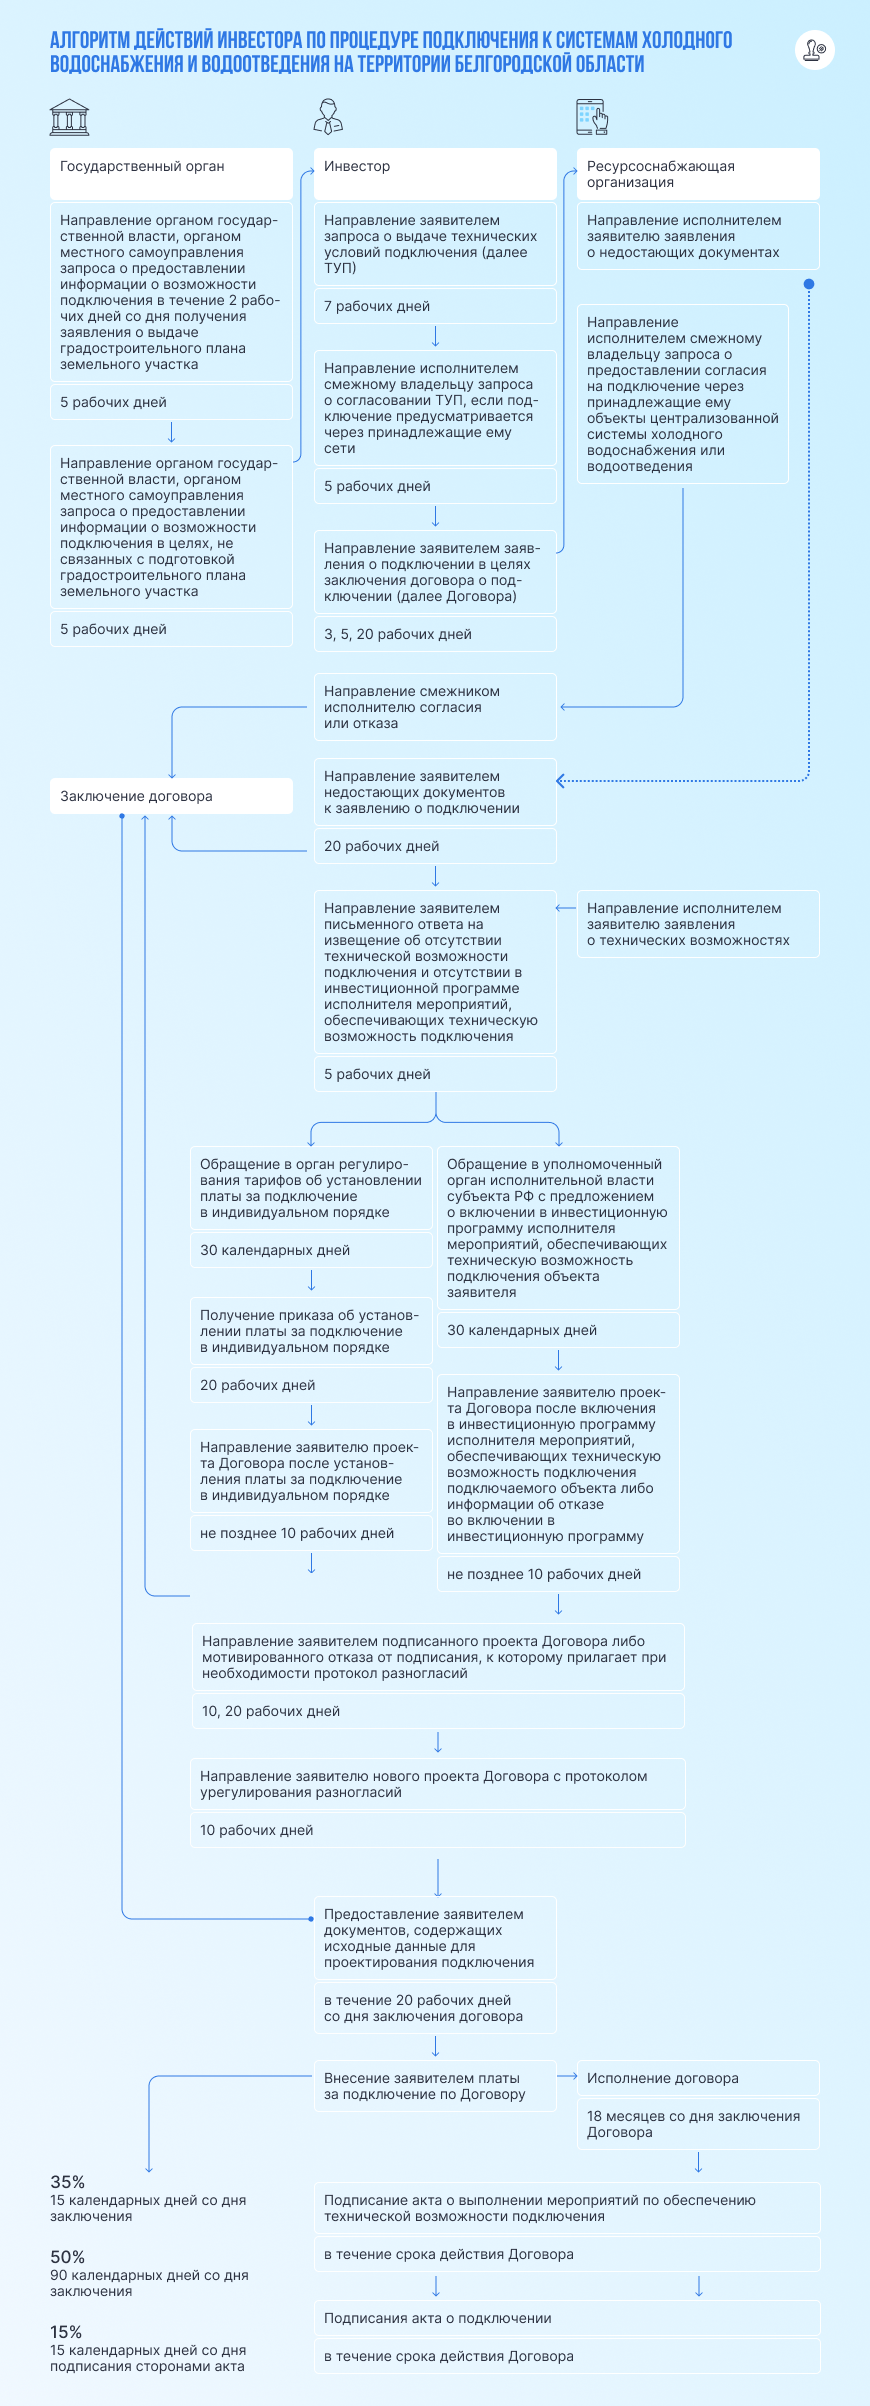 Алгоритм действий инвестора по процедуре подключения к системам холодного водоснабжения и водоотведения на территории Белгородской области